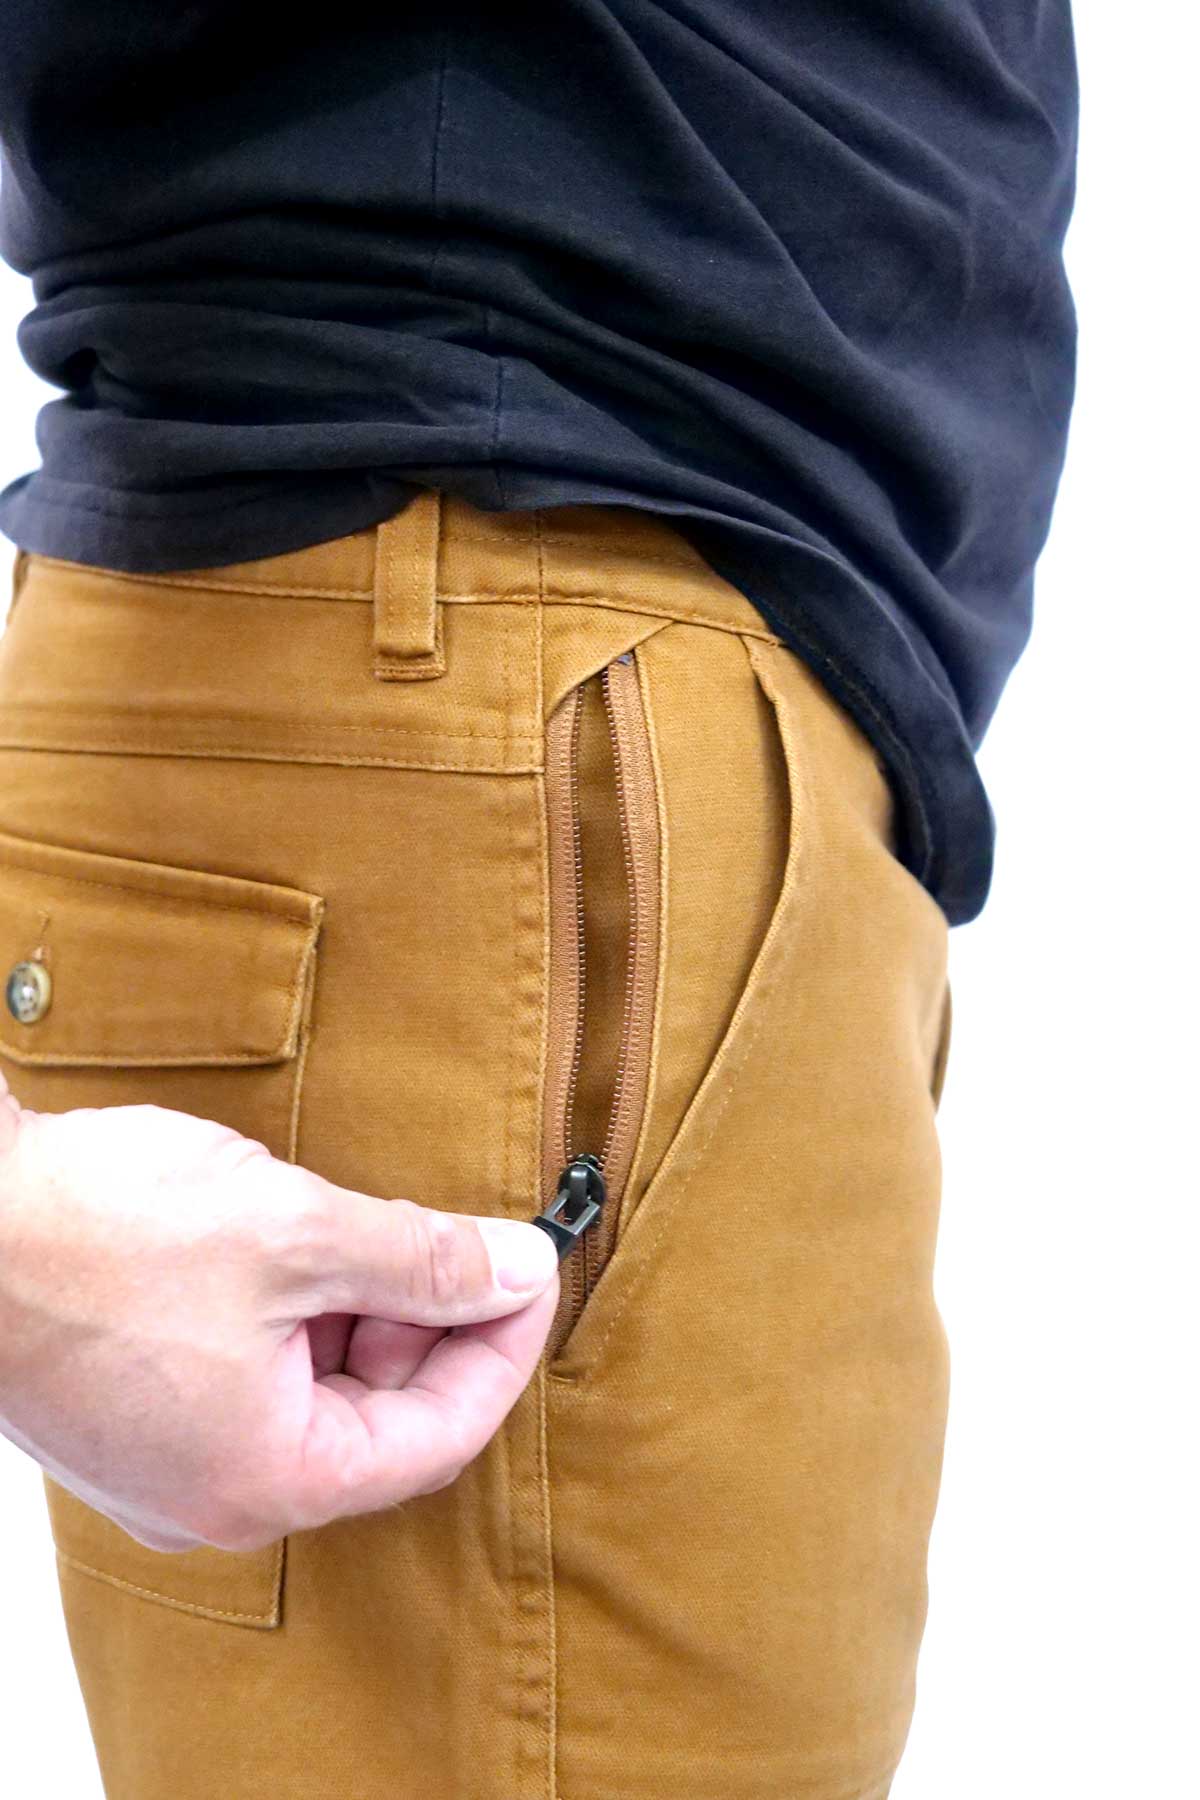 Rip Curl Atlas Walkshort - Gold side zip pocket